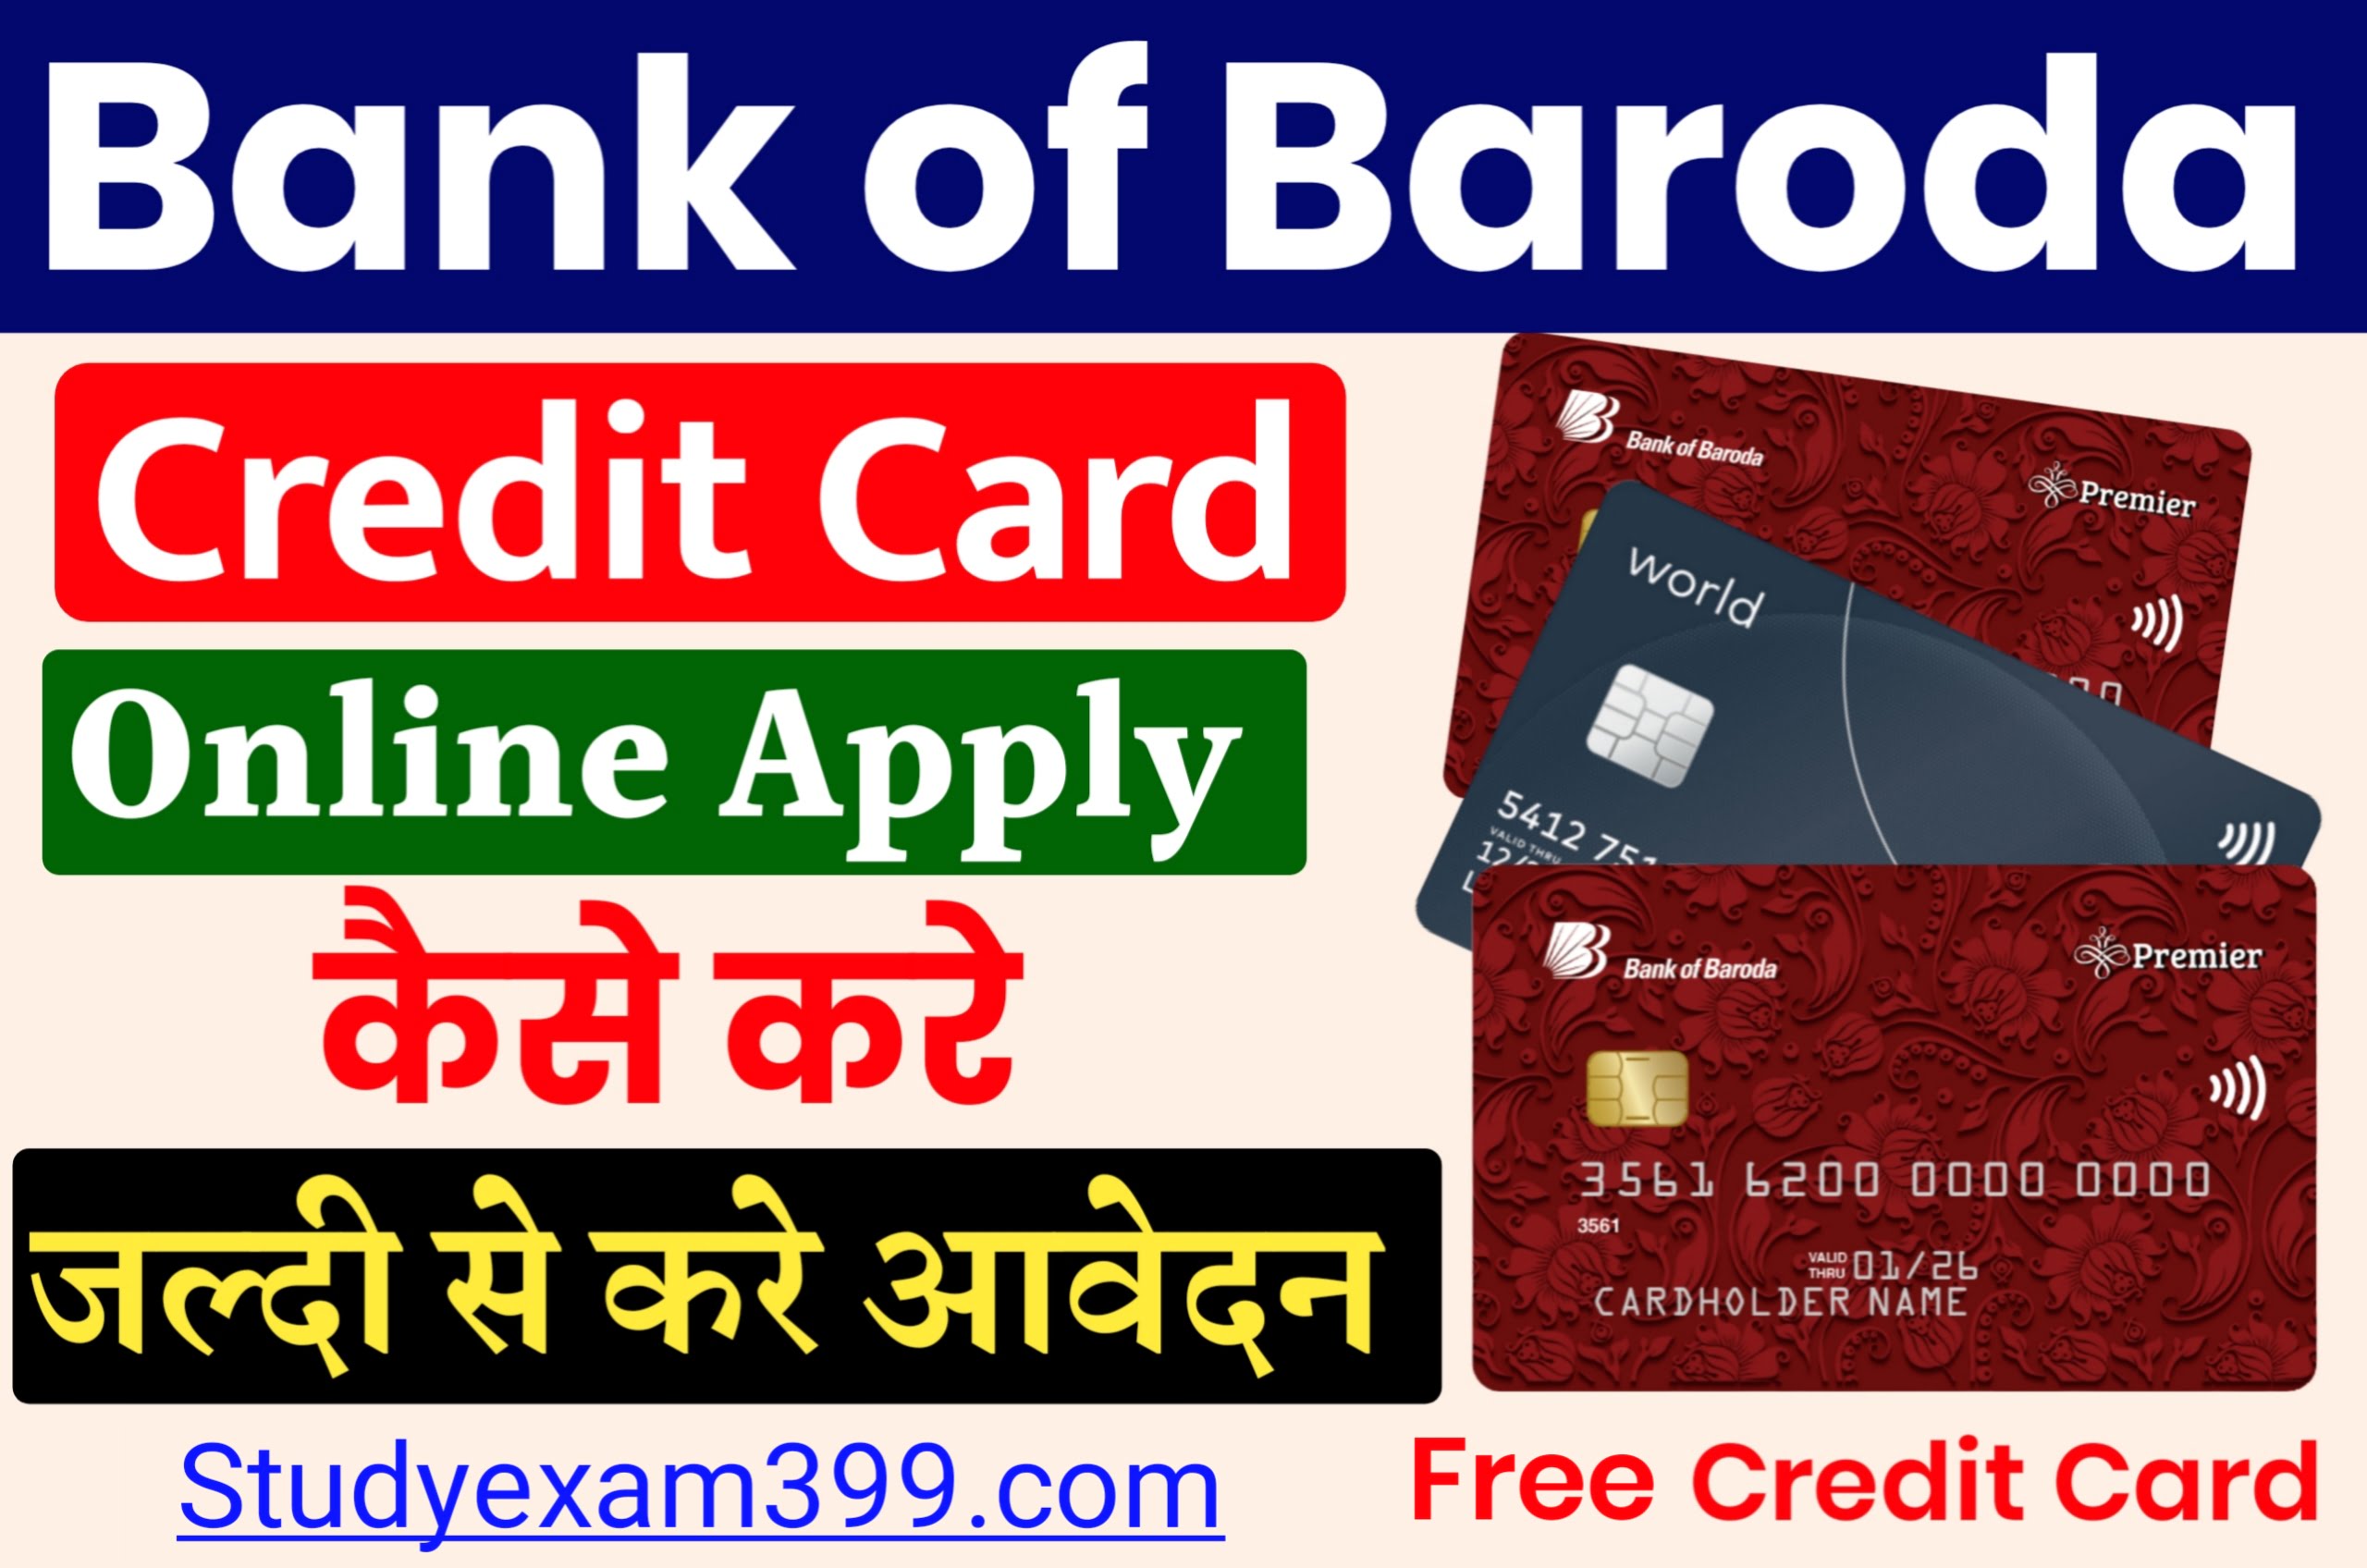 Bank of Baroda Credit Card Apply Kaise Kare - बैंक ऑफ बड़ौदा में क्रेडिट कार्ड के लिए ऑनलाइन अप्लाई घर बैठे हैं कैसे करें जानिए पूरी जानकारी